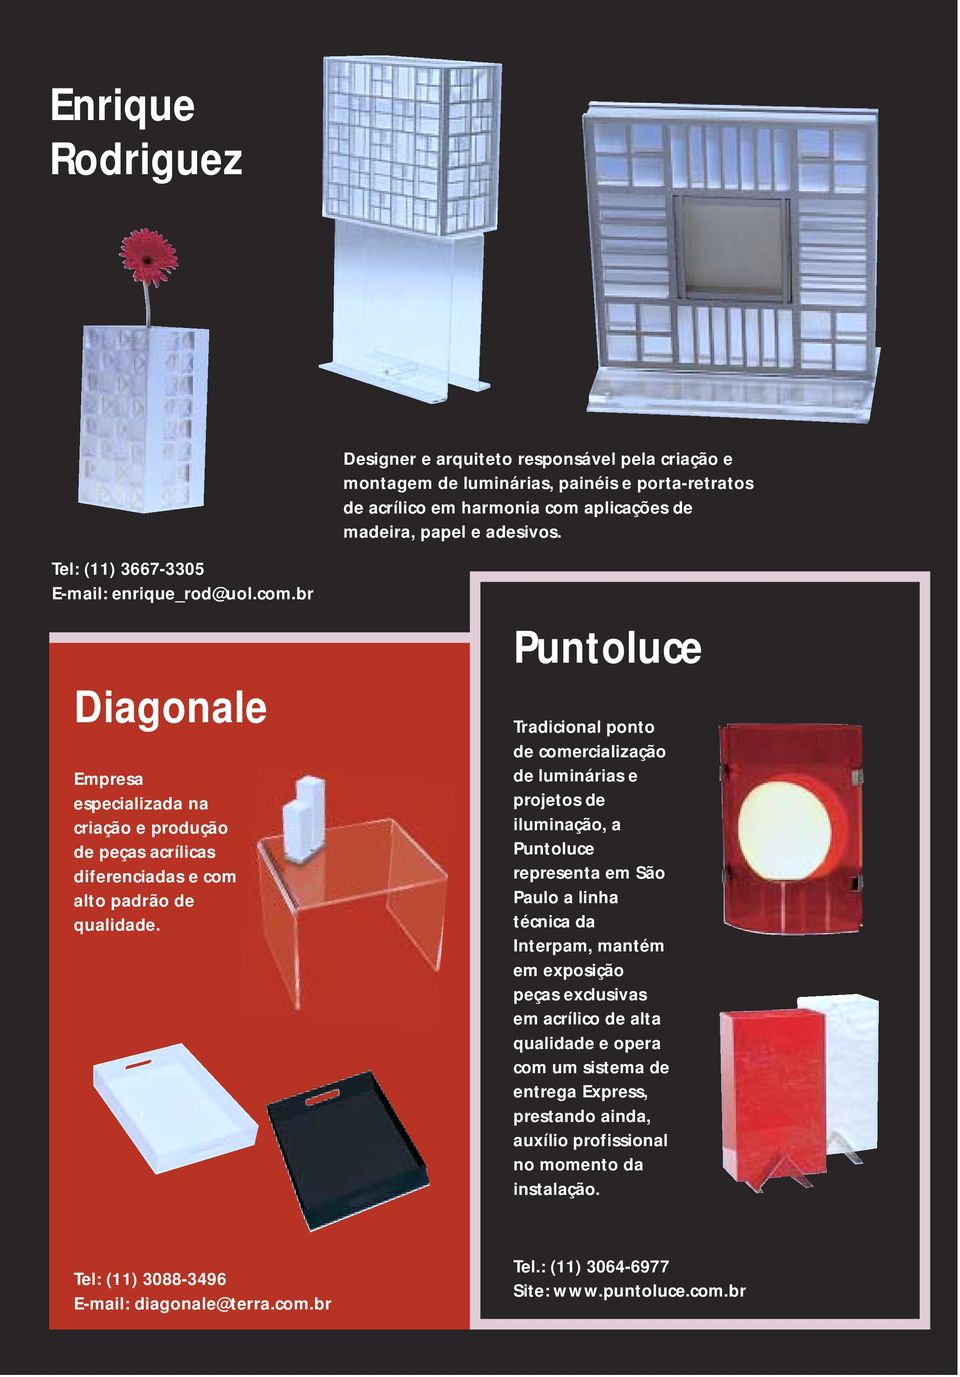 Puntoluce Tradicional ponto de comercialização de luminárias e projetos de iluminação, a Puntoluce representa em São Paulo a linha técnica da Interpam, mantém em exposição peças exclusivas em